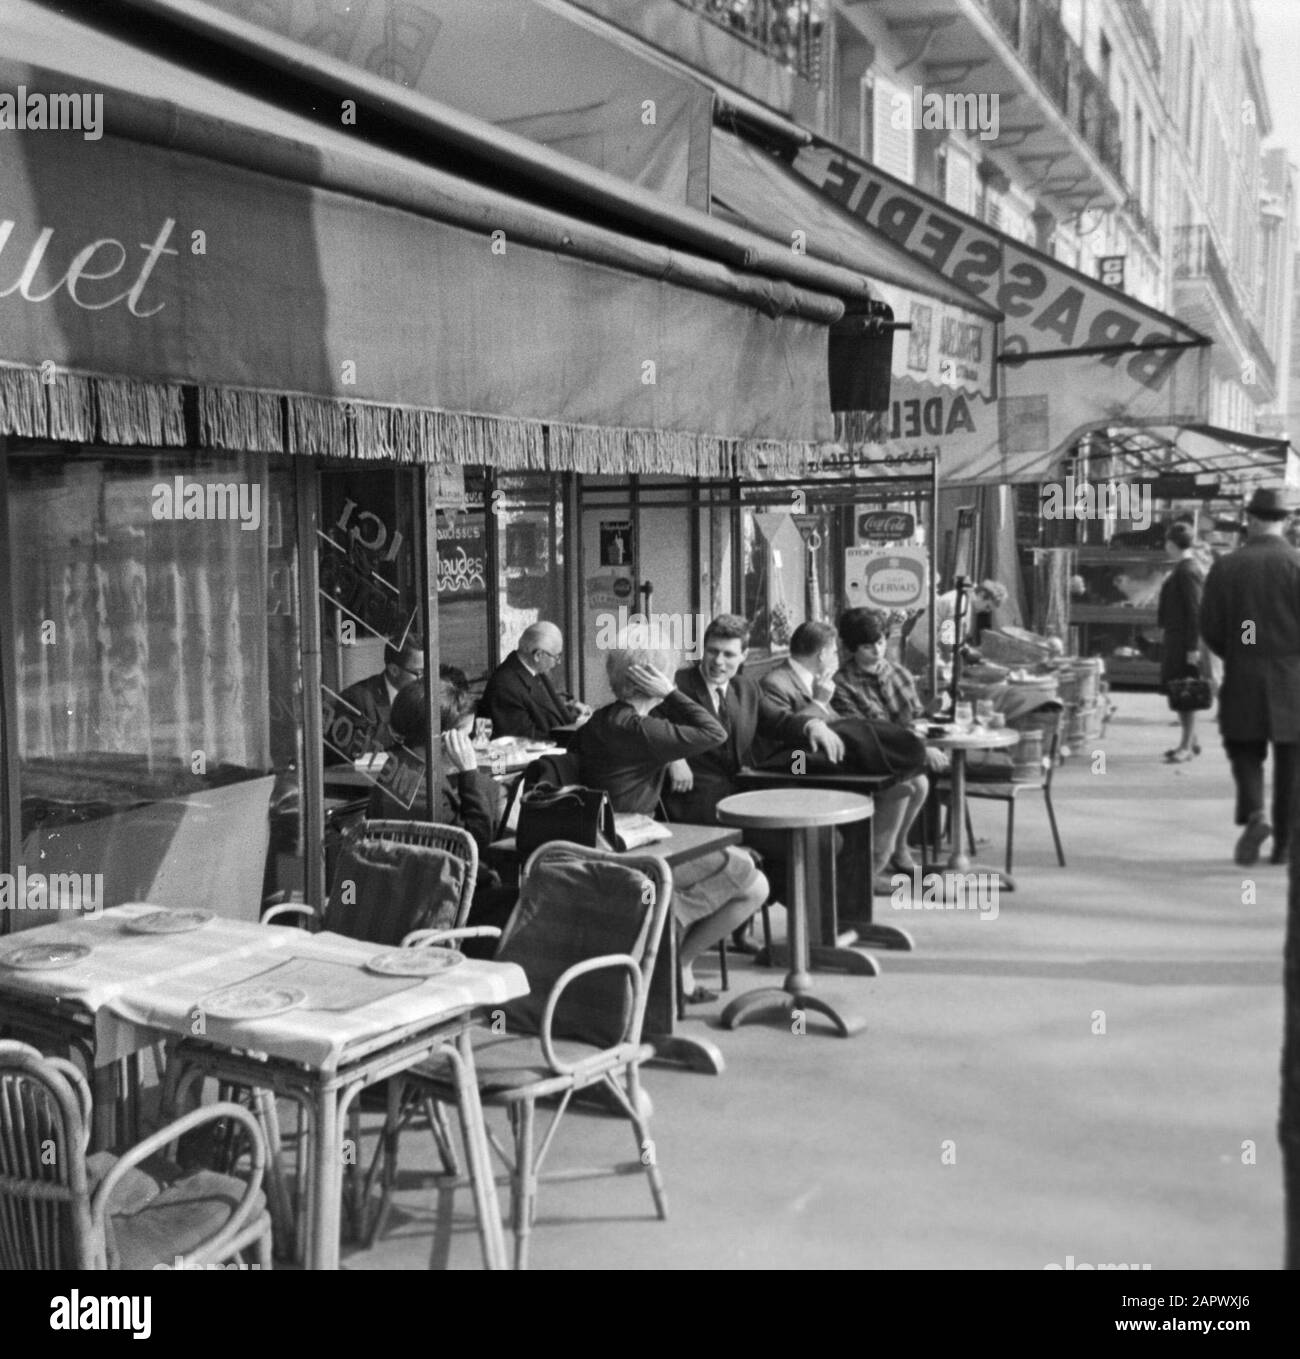 Pariser Bilder [The street life of Paris]  On the terrace Date: 1965 Location: France, Paris Keywords: cafes, street sculptures, terraces Stock Photo